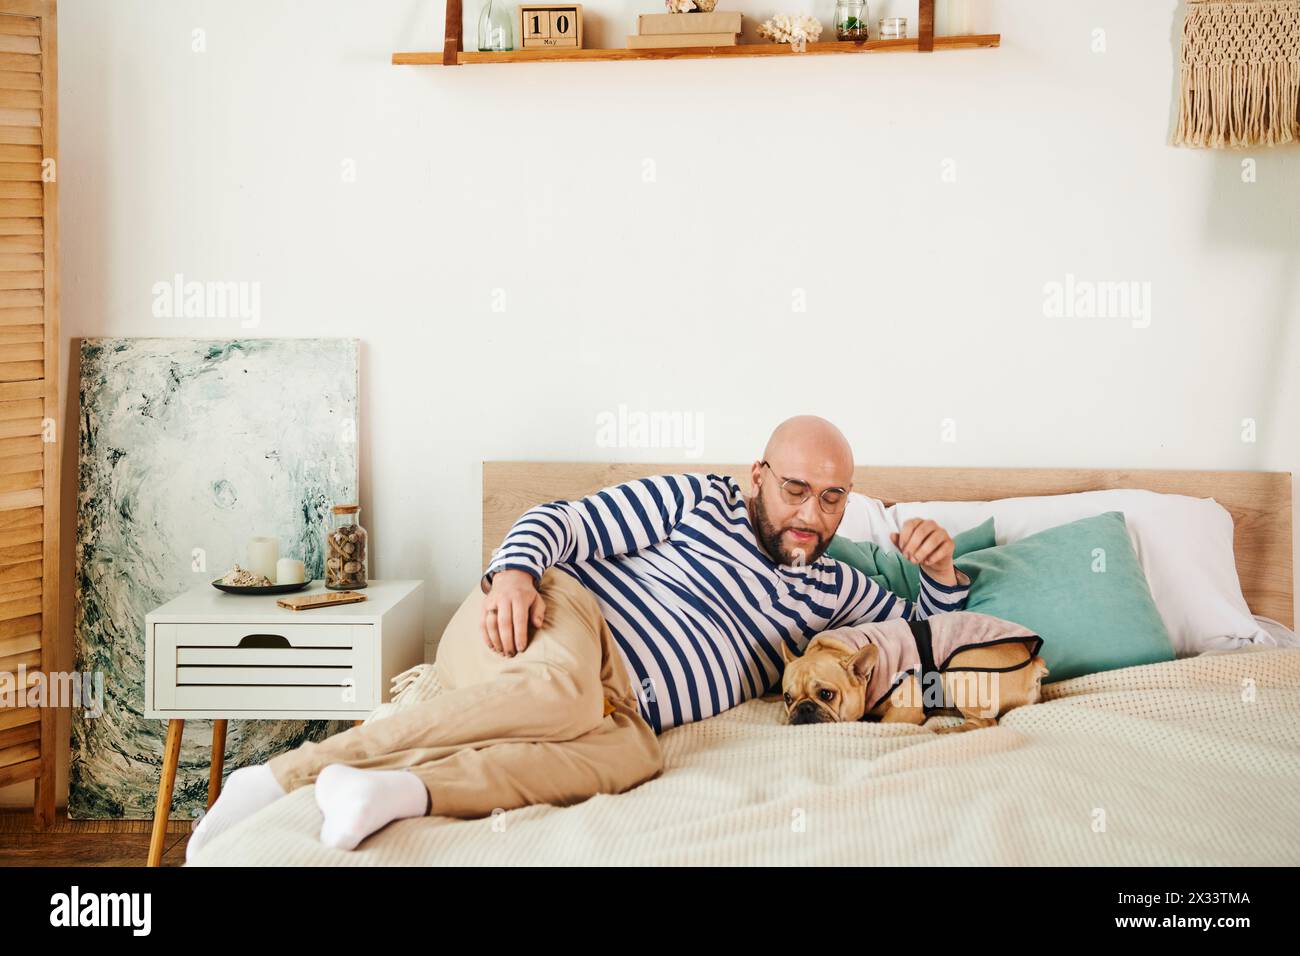 Hübscher Mann mit Brille auf einem Bett neben einer französischen Bulldogge. Stockfoto